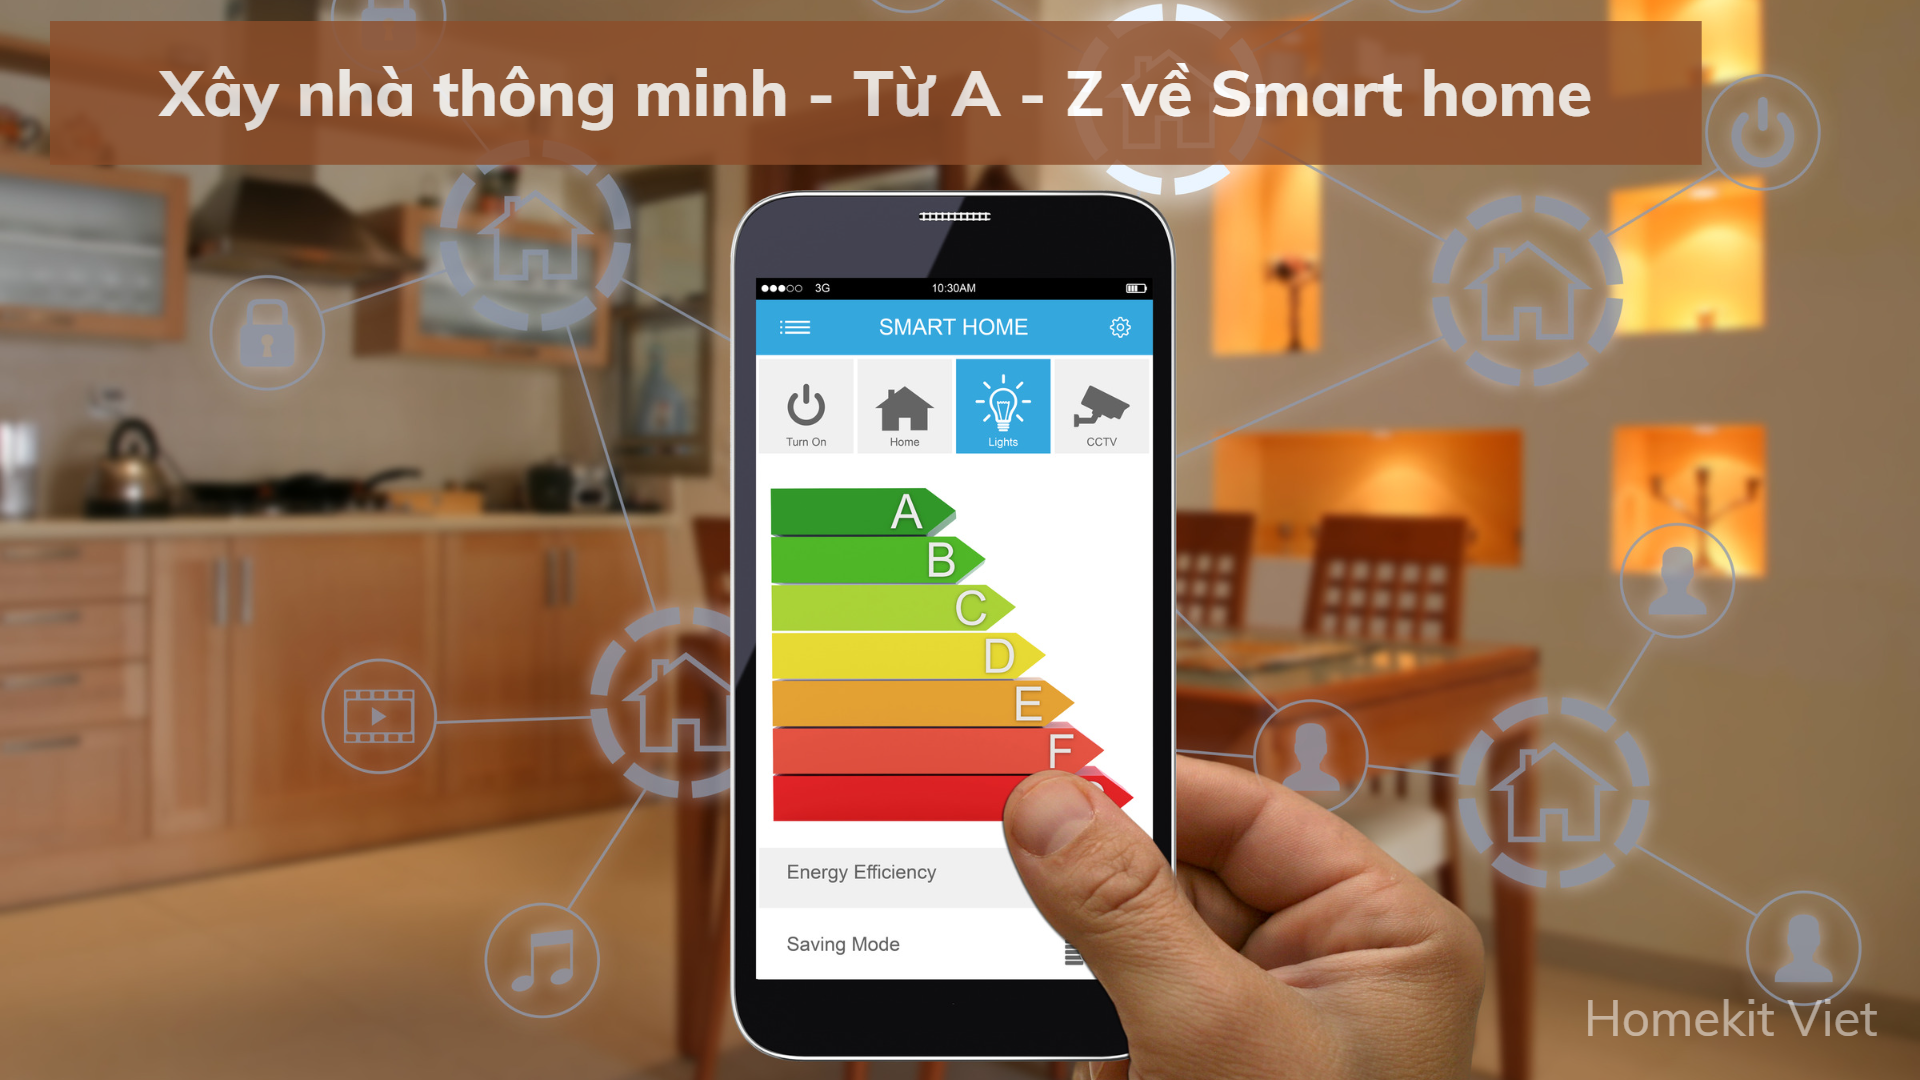 Xây nhà thông minh - Từ A - Z về Smart home | Homekit Việt